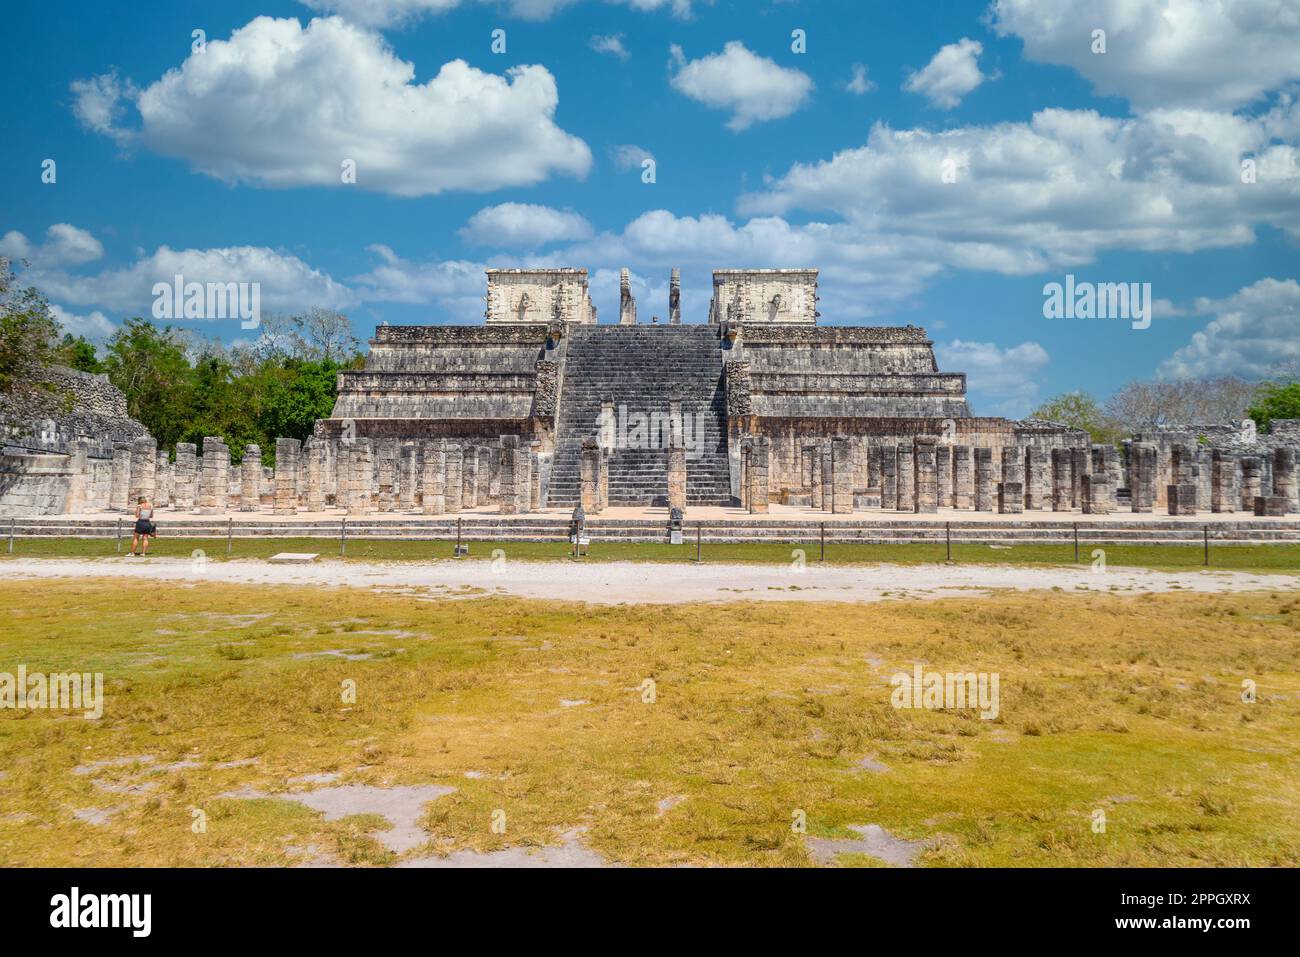 Temple des guerriers à Chichen Itza, Quintana Roo, Mexique. Ruines mayas près de Cancun Banque D'Images